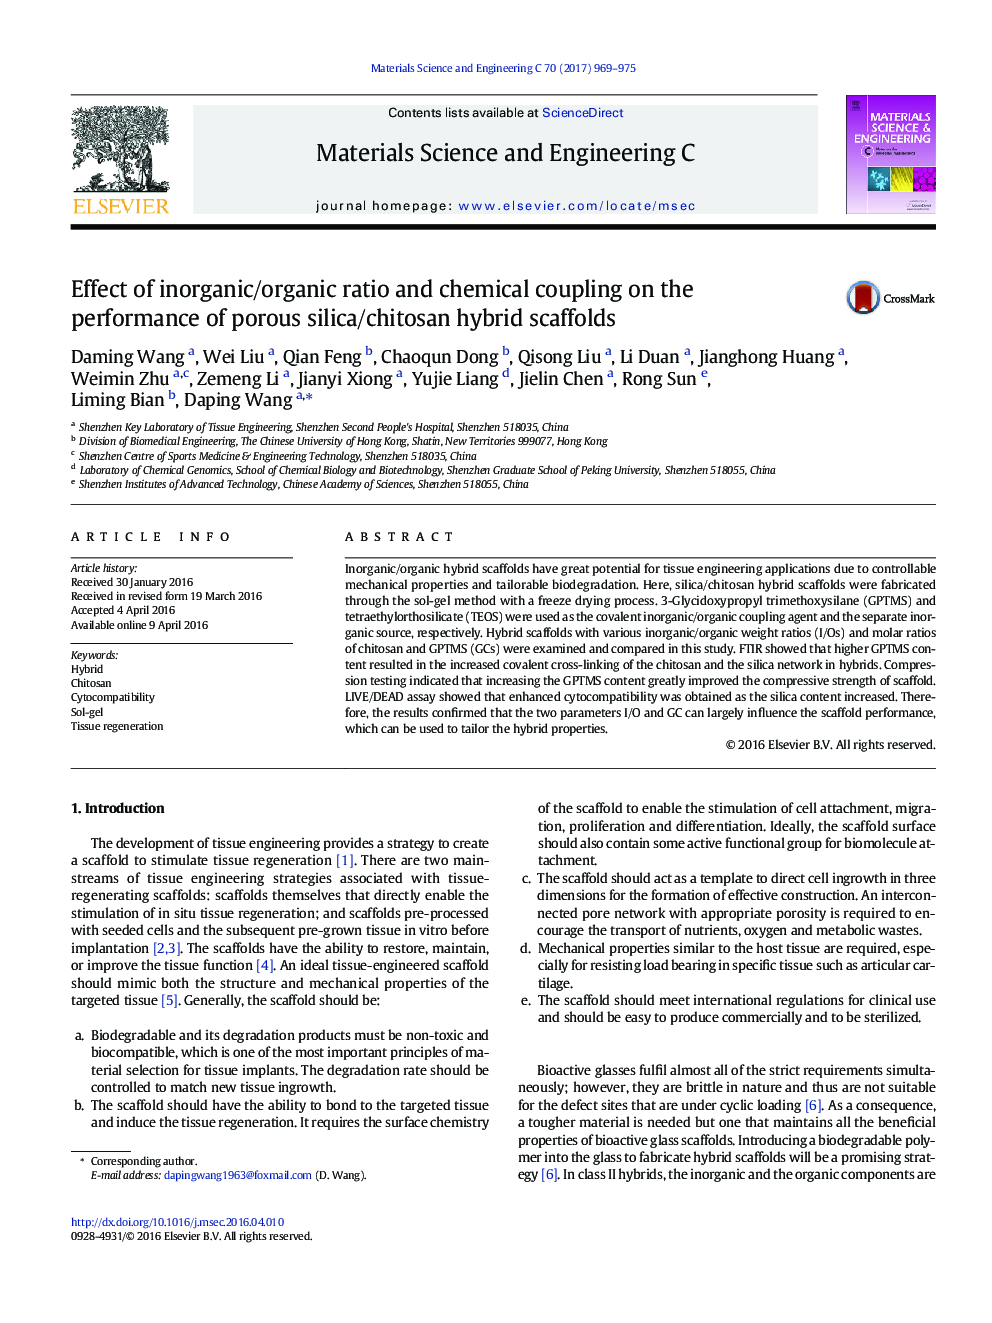 اثر نسبت معدنی / ارگانیک و اتصال شیمیایی بر روی عملکرد داربست های هیبرید سیلیس متخلخل / کیتوزان 